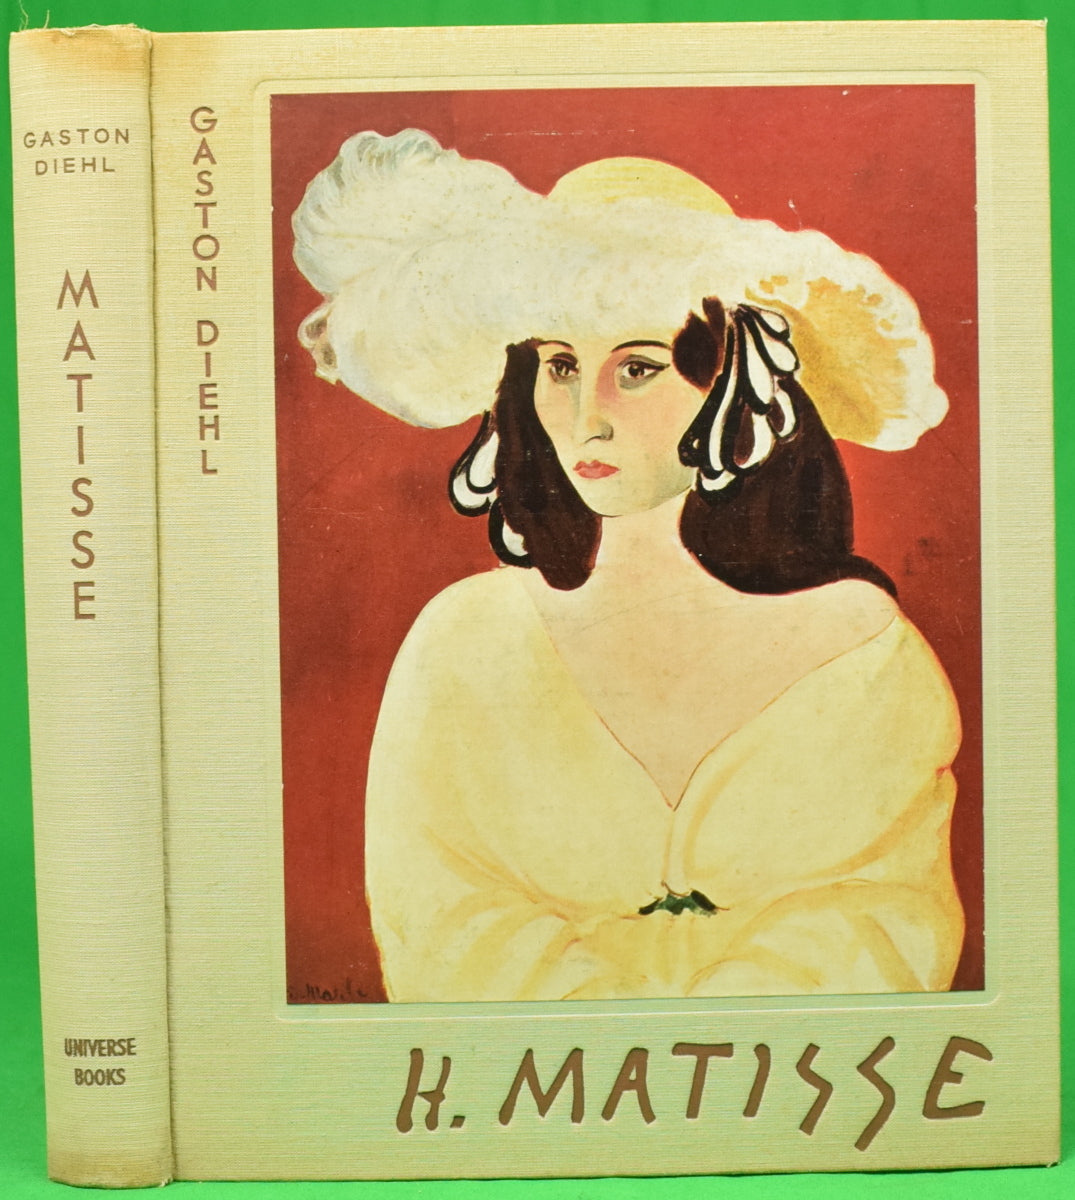 "Henri Matisse" 1958 DIEHL, Gaston